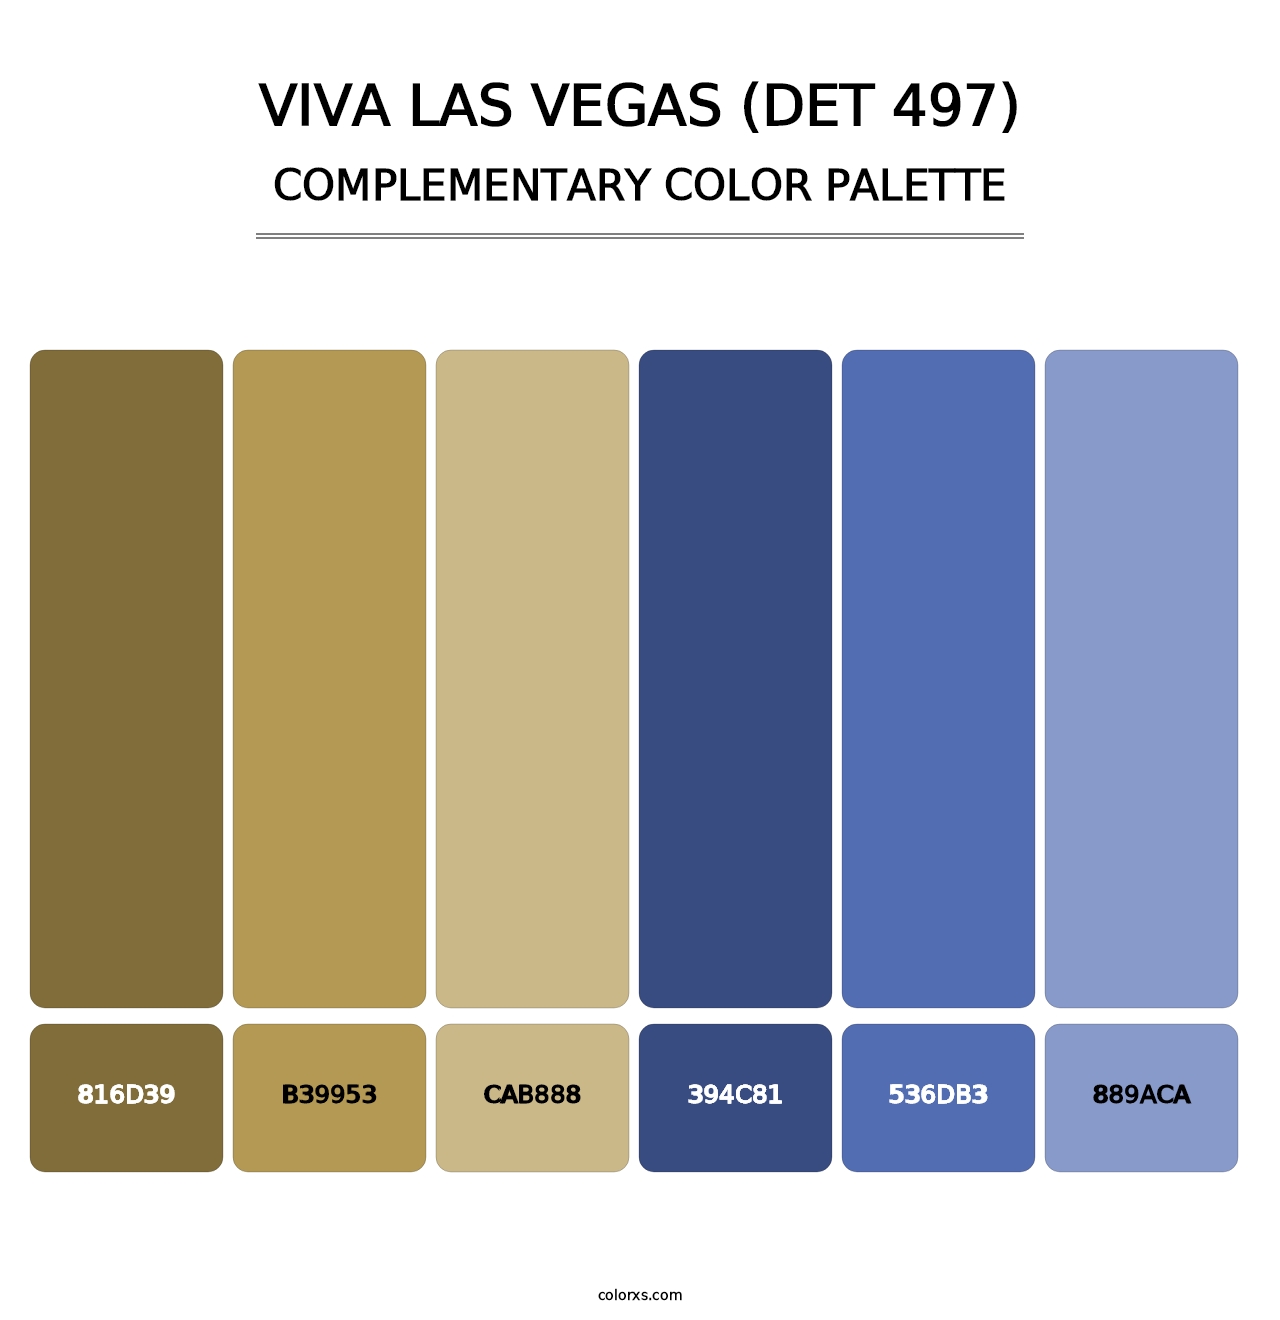 Viva Las Vegas (DET 497) - Complementary Color Palette